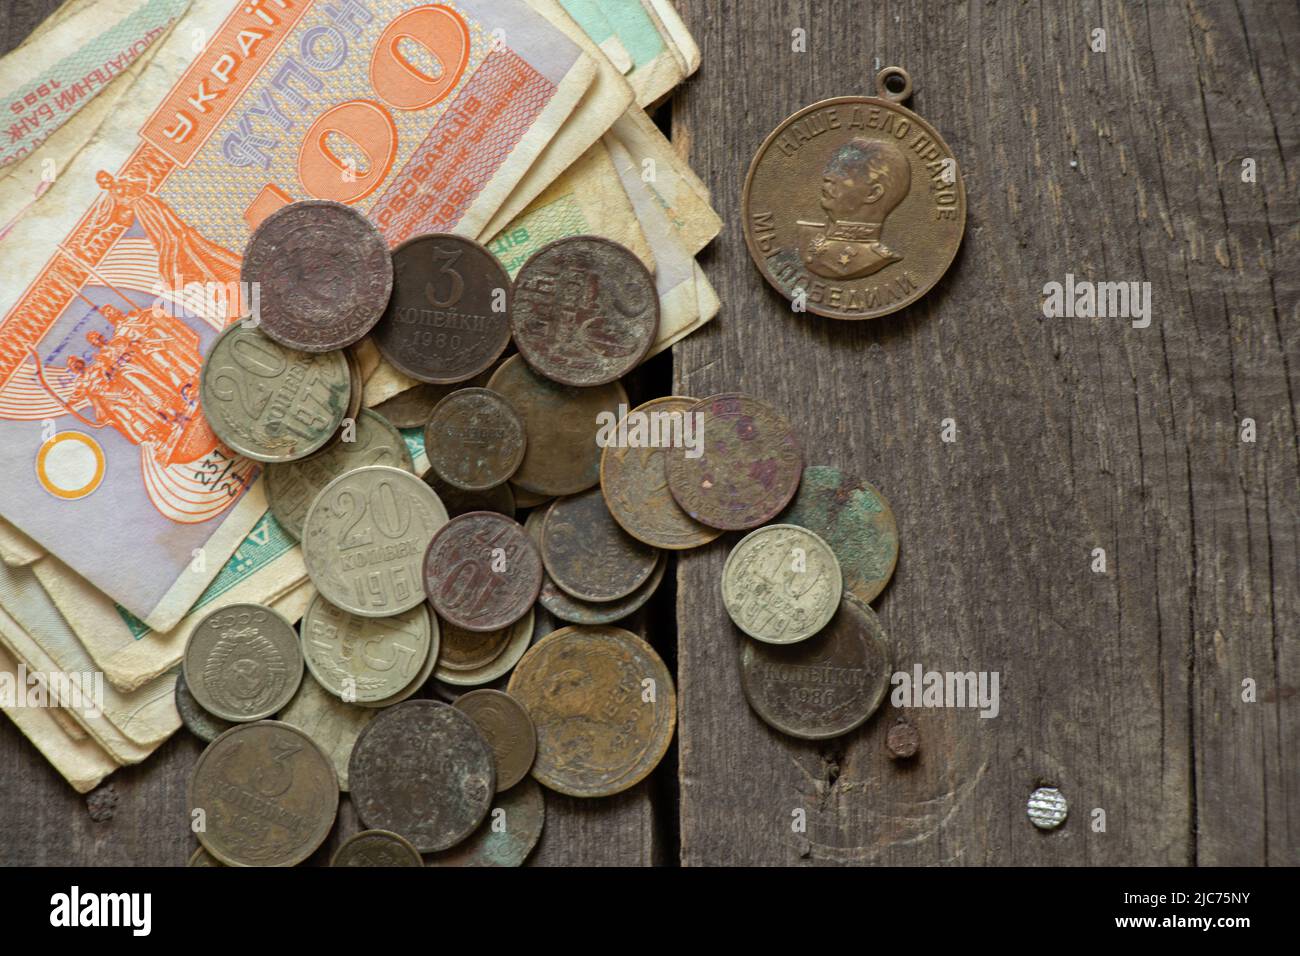 L'unité monétaire du coupon de l'État ukrainien et les pièces de l'urss se trouvent sur la table, l'ancienne monnaie soviétique, les pièces et les coupons, la finance Banque D'Images